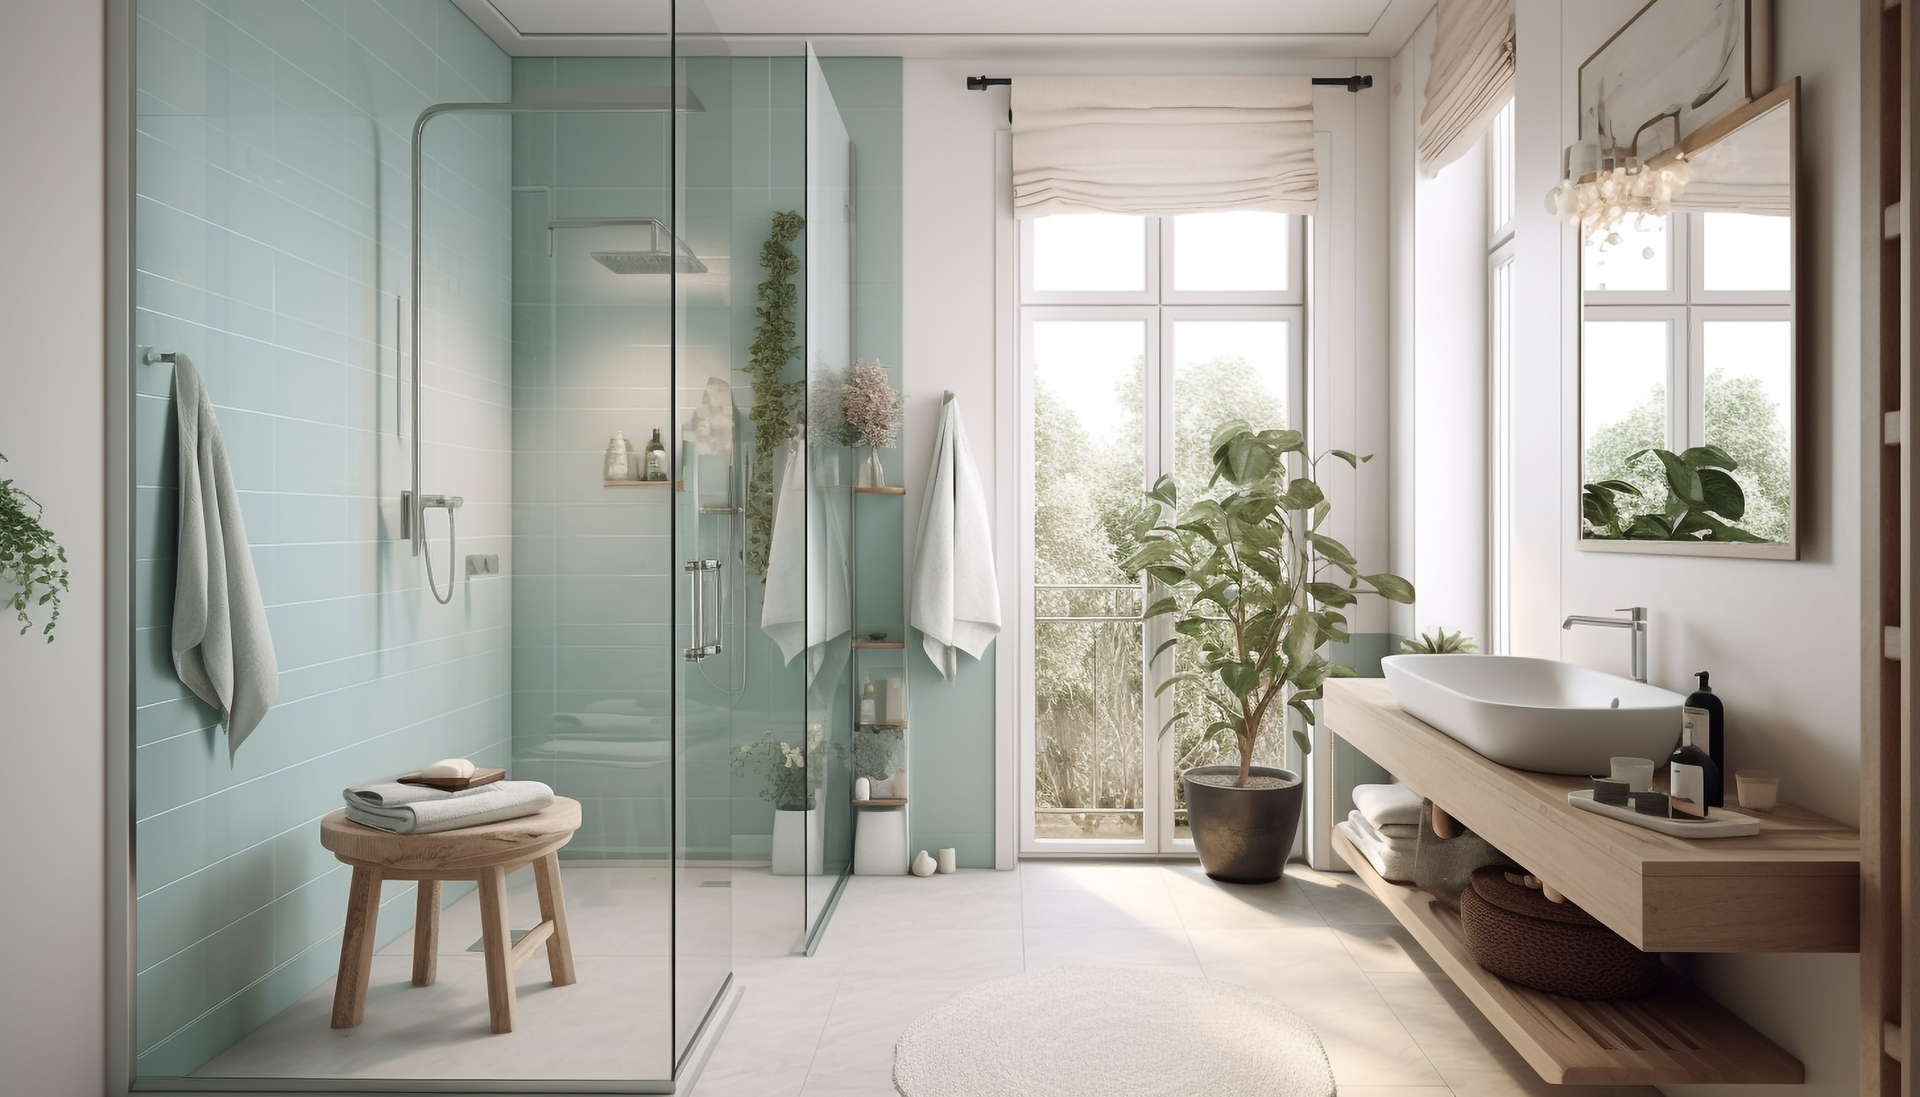 Na tym inspirującym obrazku możemy podziwiać nowoczesną łazienkę z prysznicem. Minimalistyczne linie i nowoczesne wykończenia nadają pomieszczeniu nowoczesny i elegancki charakter. Szklane przeszklenia, chromowane akcenty i wysokiej jakości wyposażenie tworzą harmonijną i luksusową przestrzeń kąpielową, idealną do relaksu i odprężenia